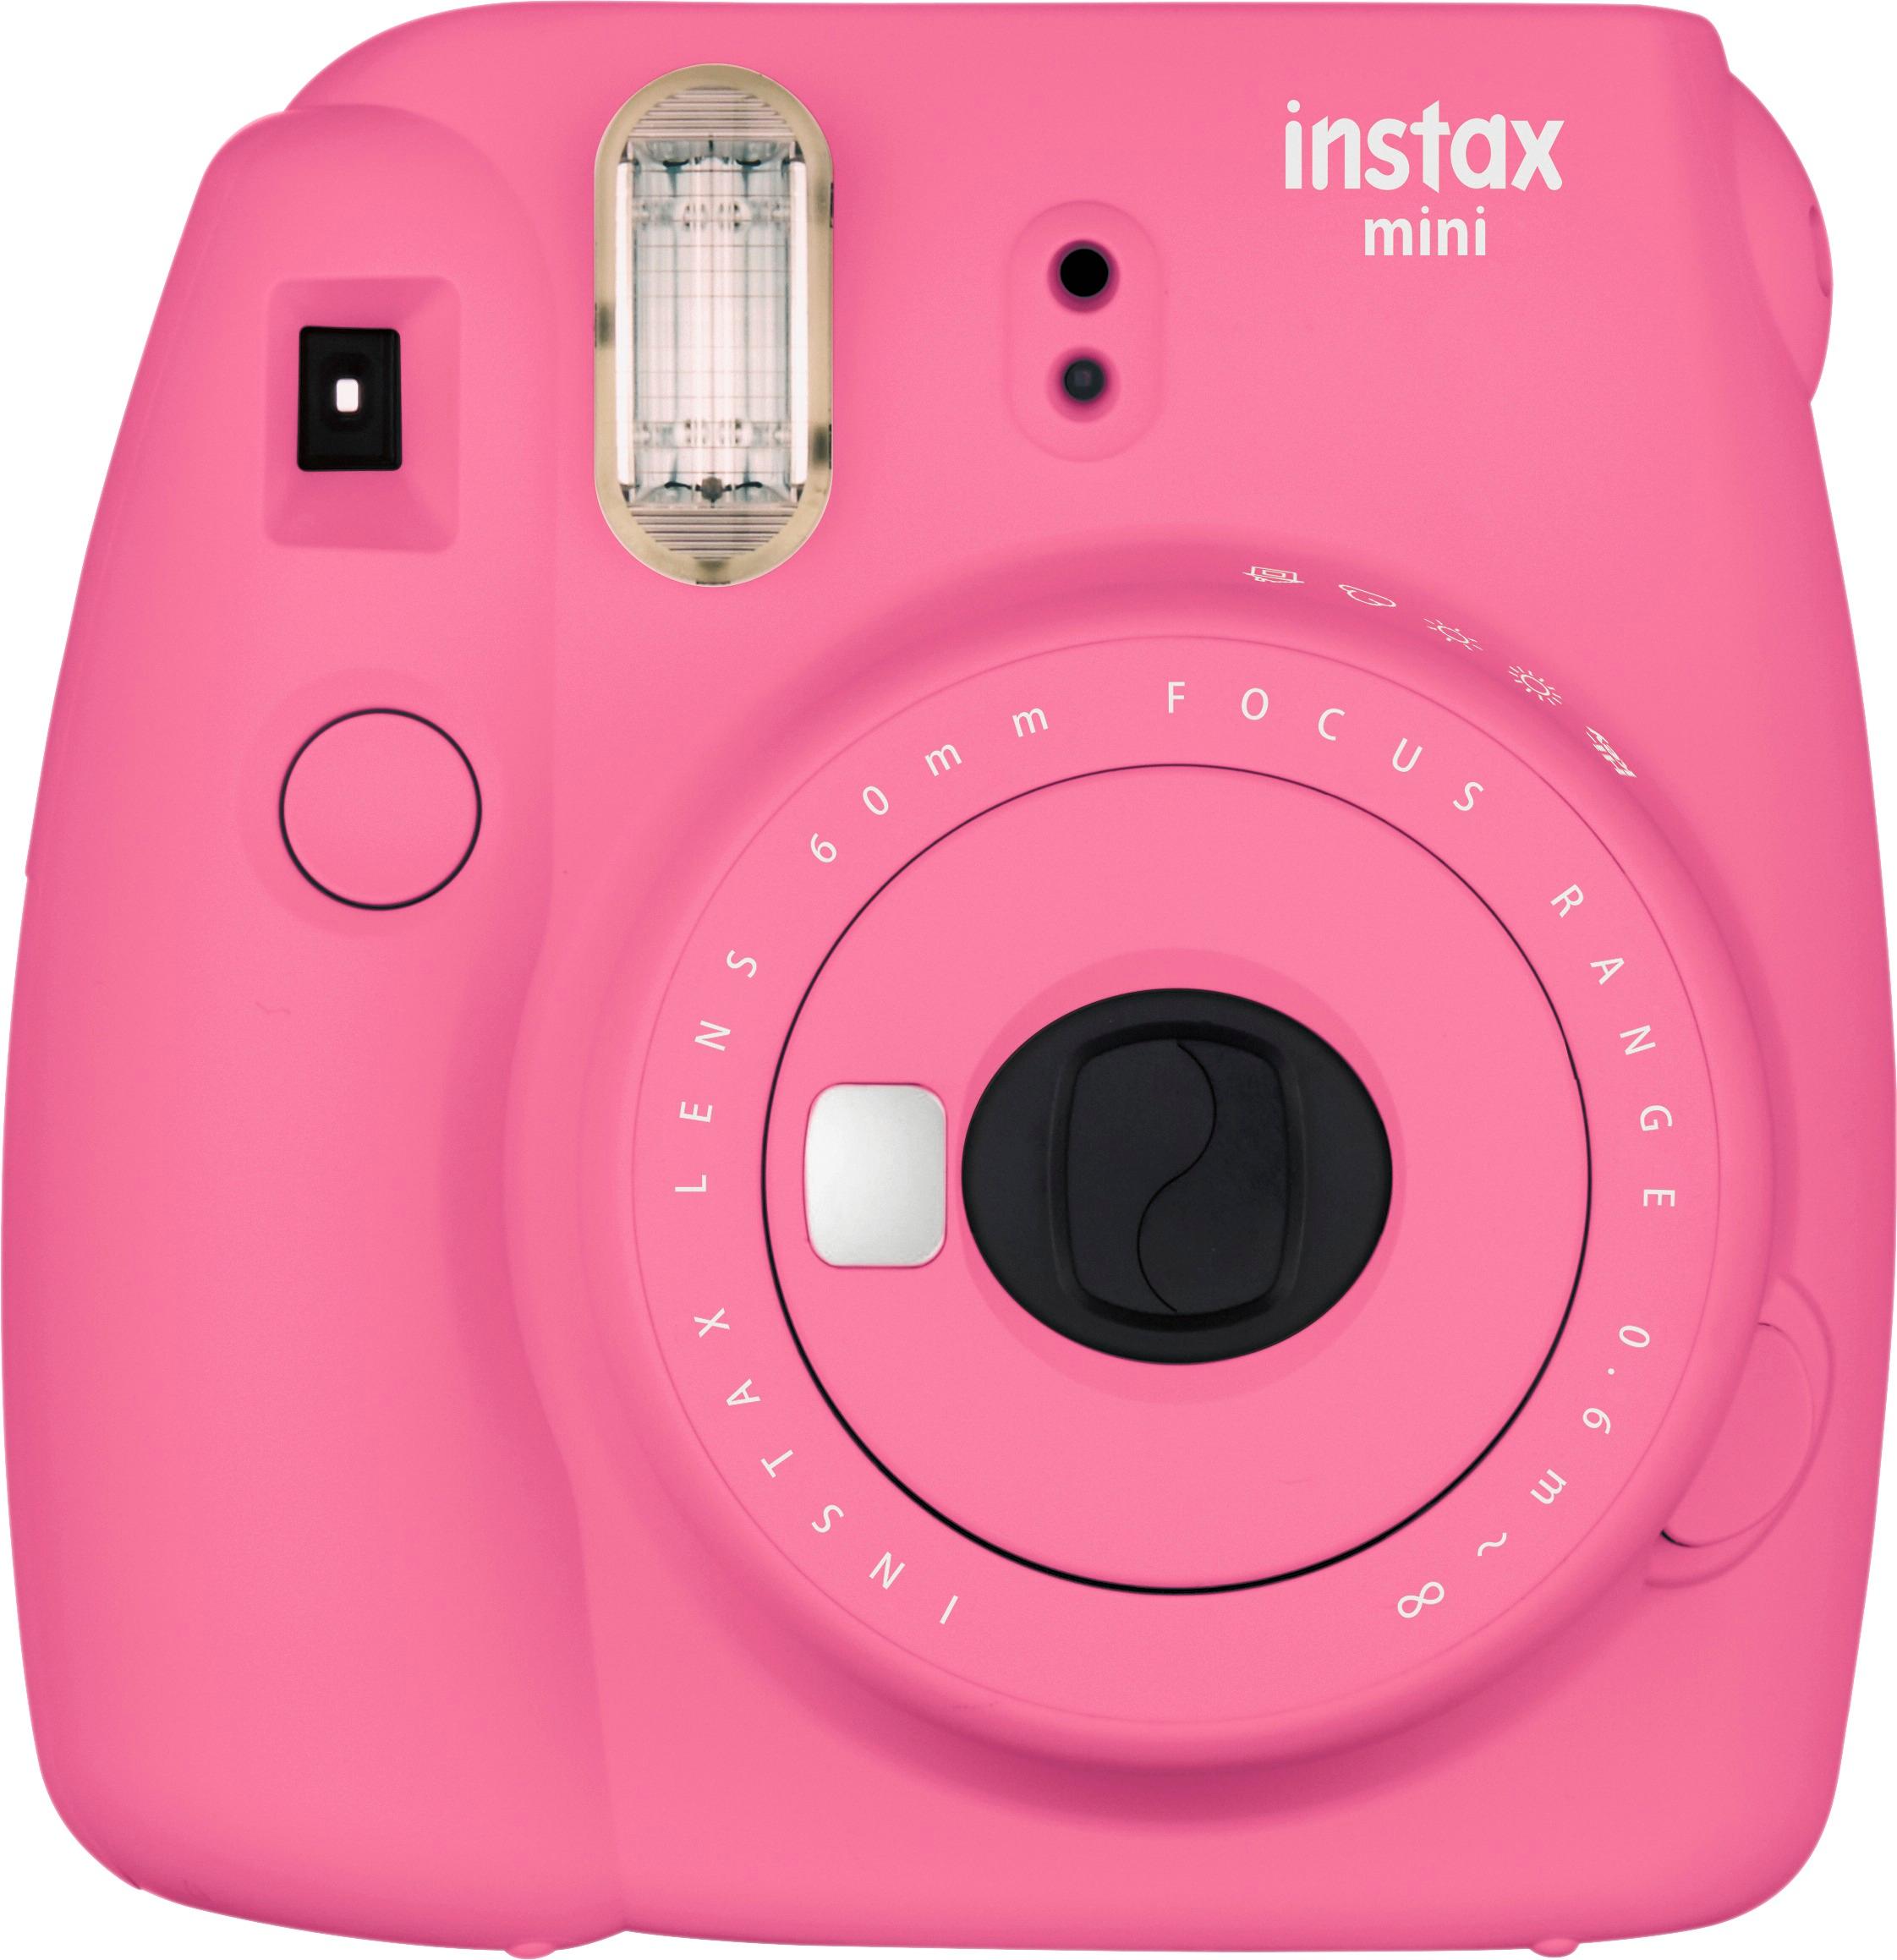 Fujifilm instax mini 9 Instant Film Camera Pink 16550631 - Best Buy